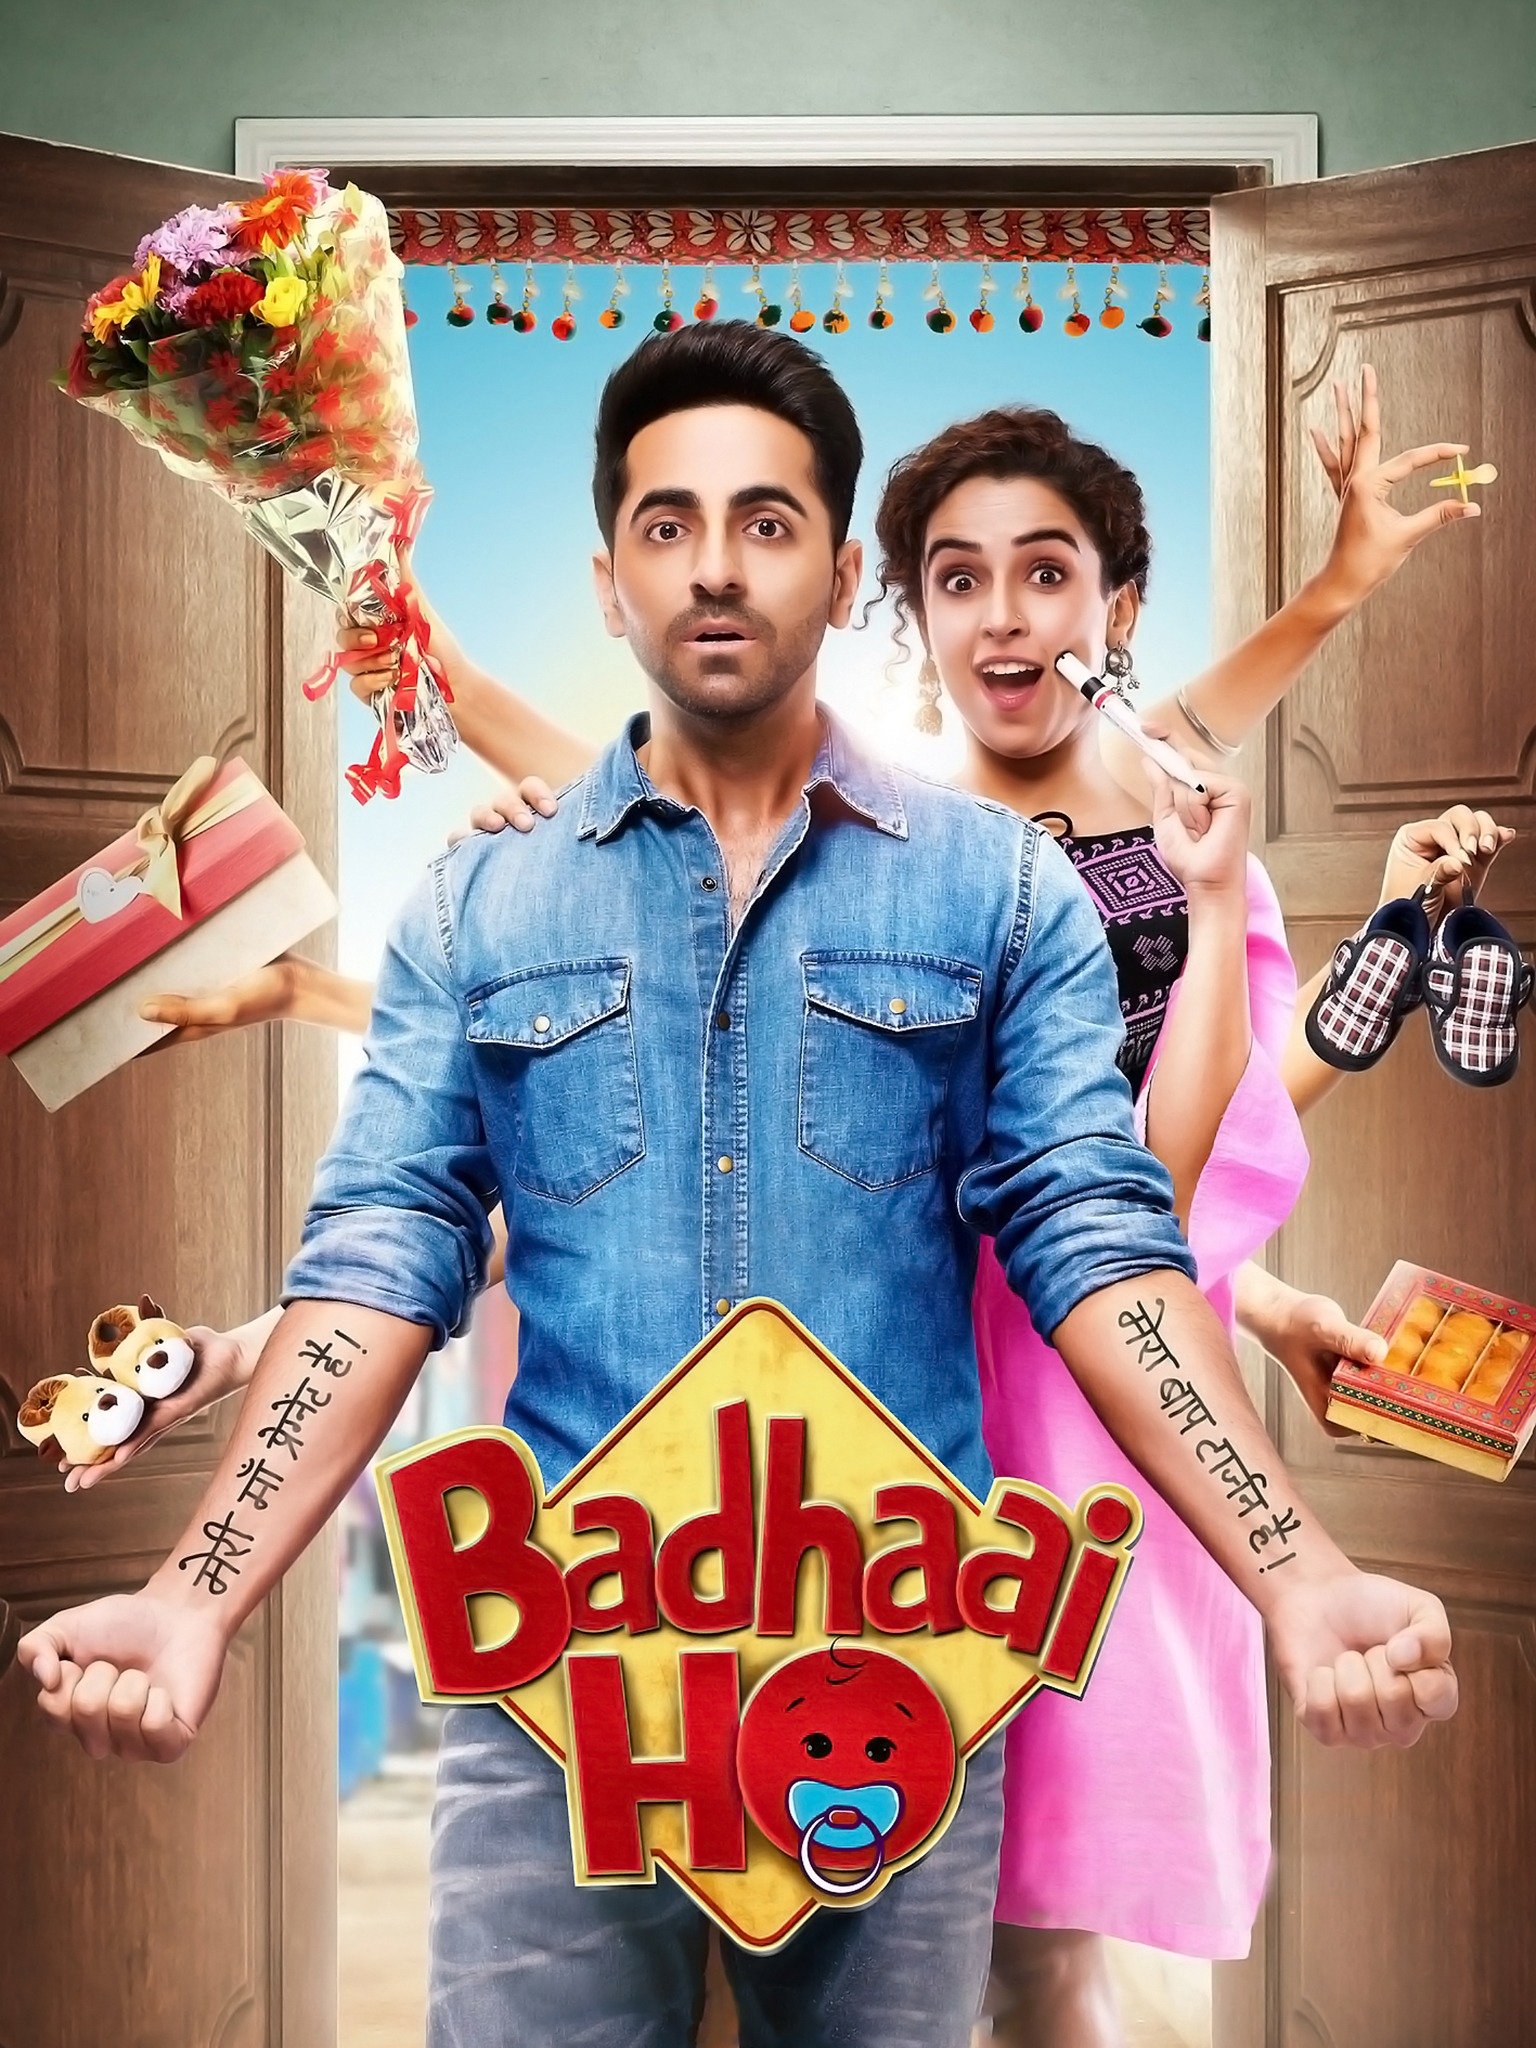 badhaai-ho-2018-3519-poster.jpg